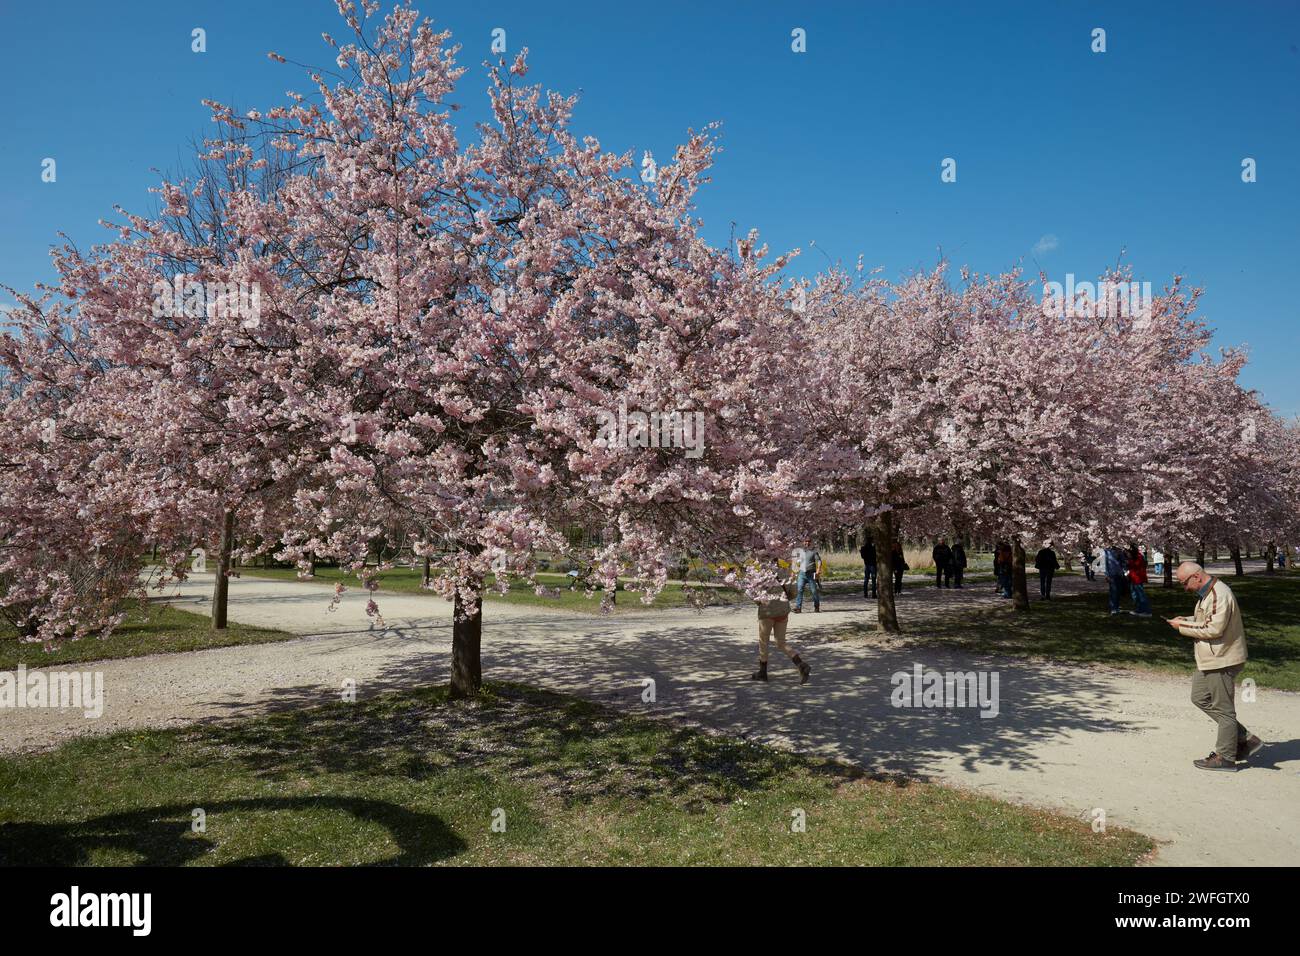 VENARIA REALE, ITALIEN - 29. MÄRZ 2023: Kirschblüte mit rosafarbenen Blüten und Menschen, die im Park Reggia di Venaria bei Sonnenlicht im Frühling spazieren gehen Stockfoto